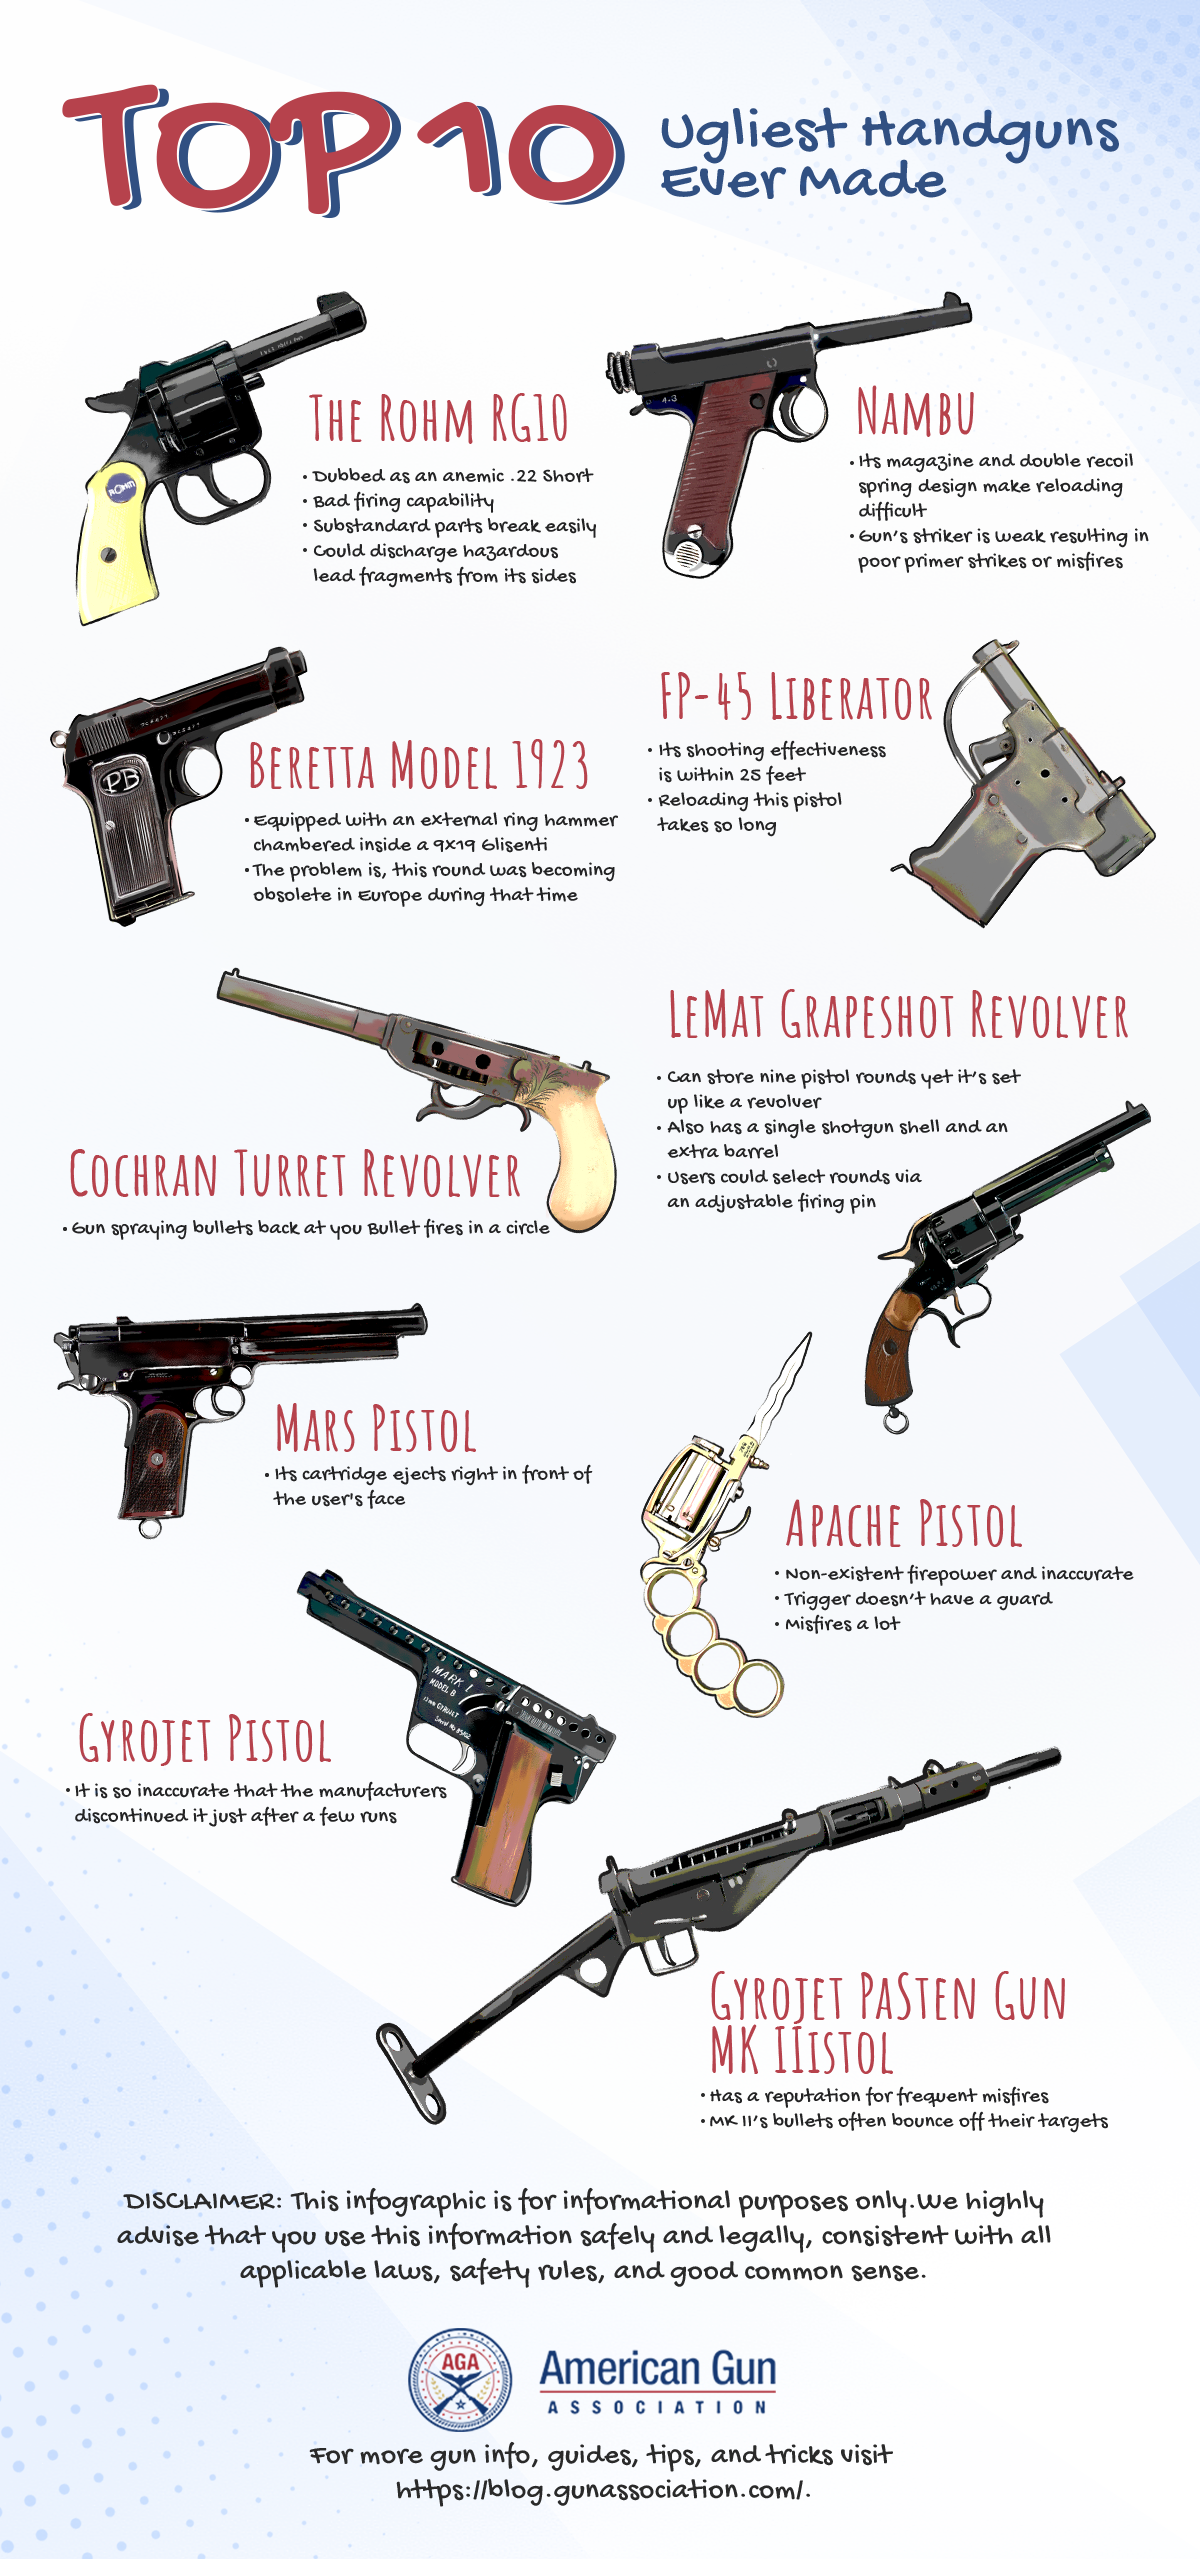 Top 10 Ugliest Handguns Ever Made